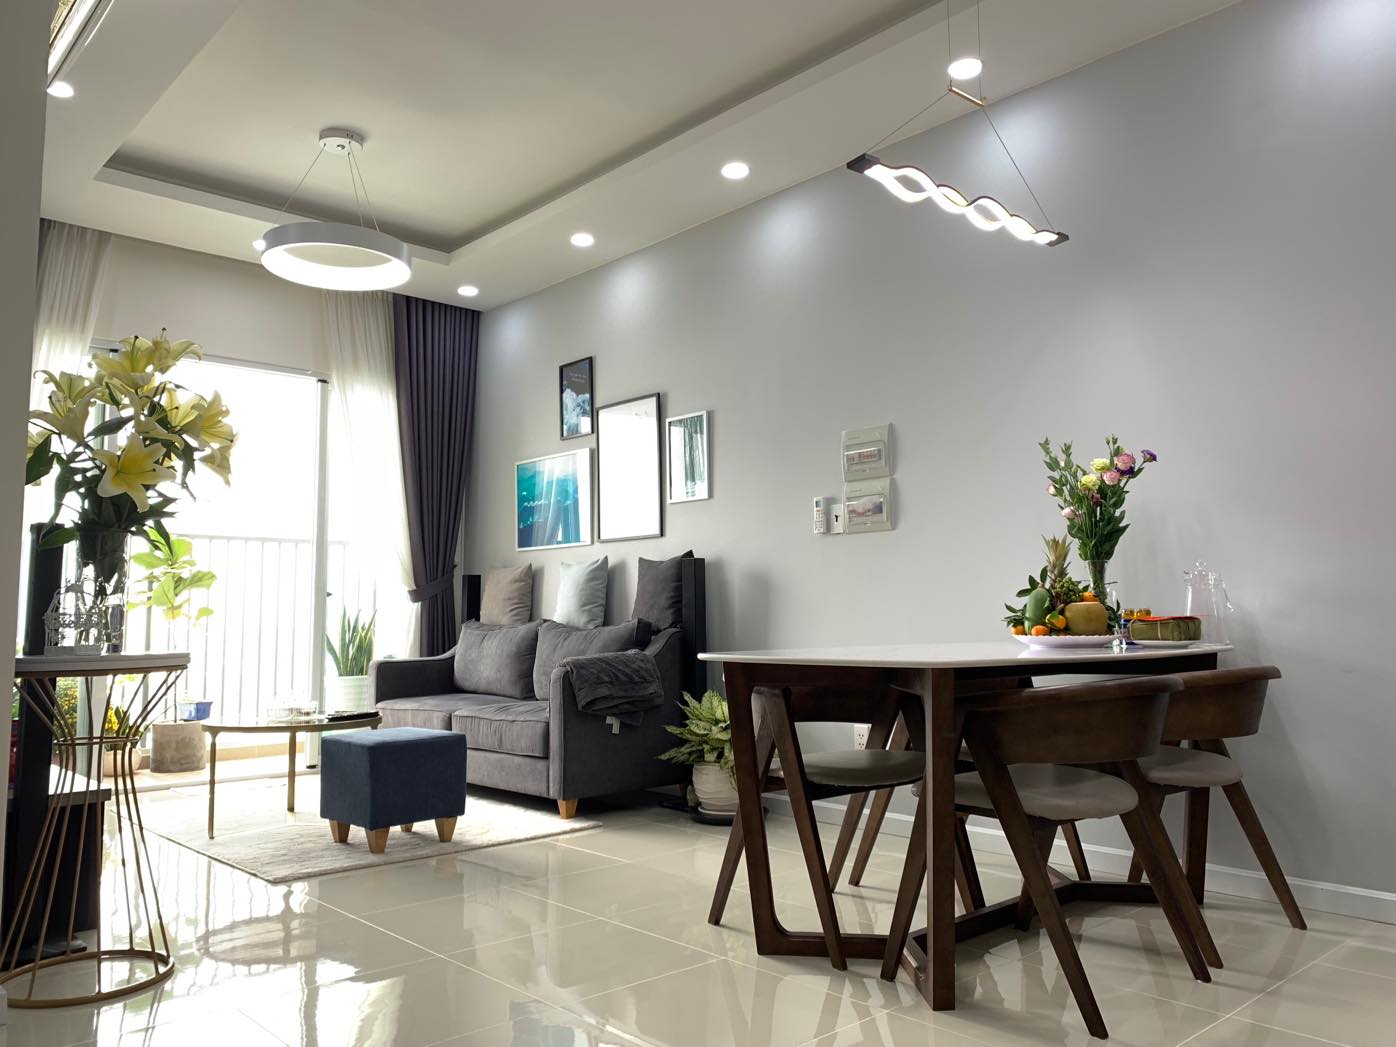 Cho thuê căn hộ cao cấp chung cư Hưng Phúc, Phú Mỹ Hưng, Quận 7. Liên hệ: 0898.980.814 Ms: Uyên giá rẻ nhất thị trường.